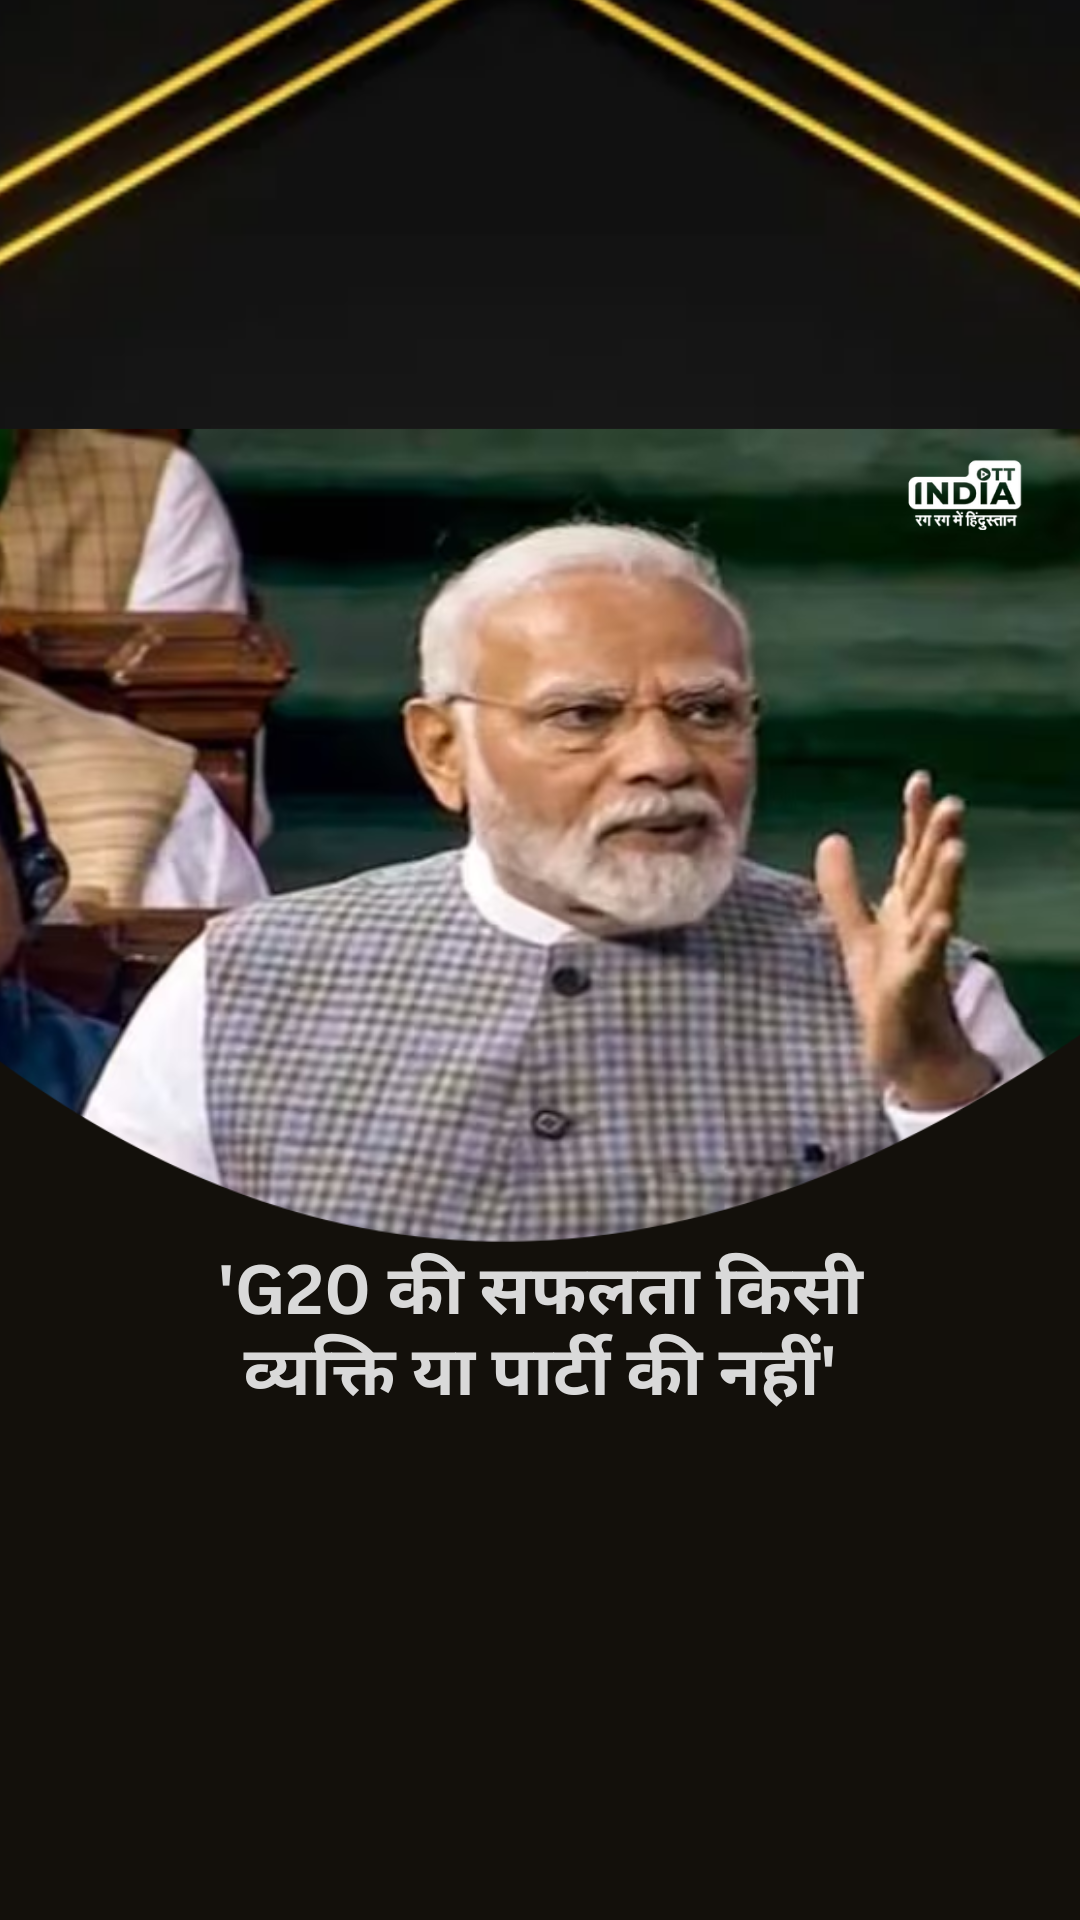 Parliament Special Session: ‘G20 की सफलता किसी व्यक्ति या पार्टी की नहीं’- PM Modi